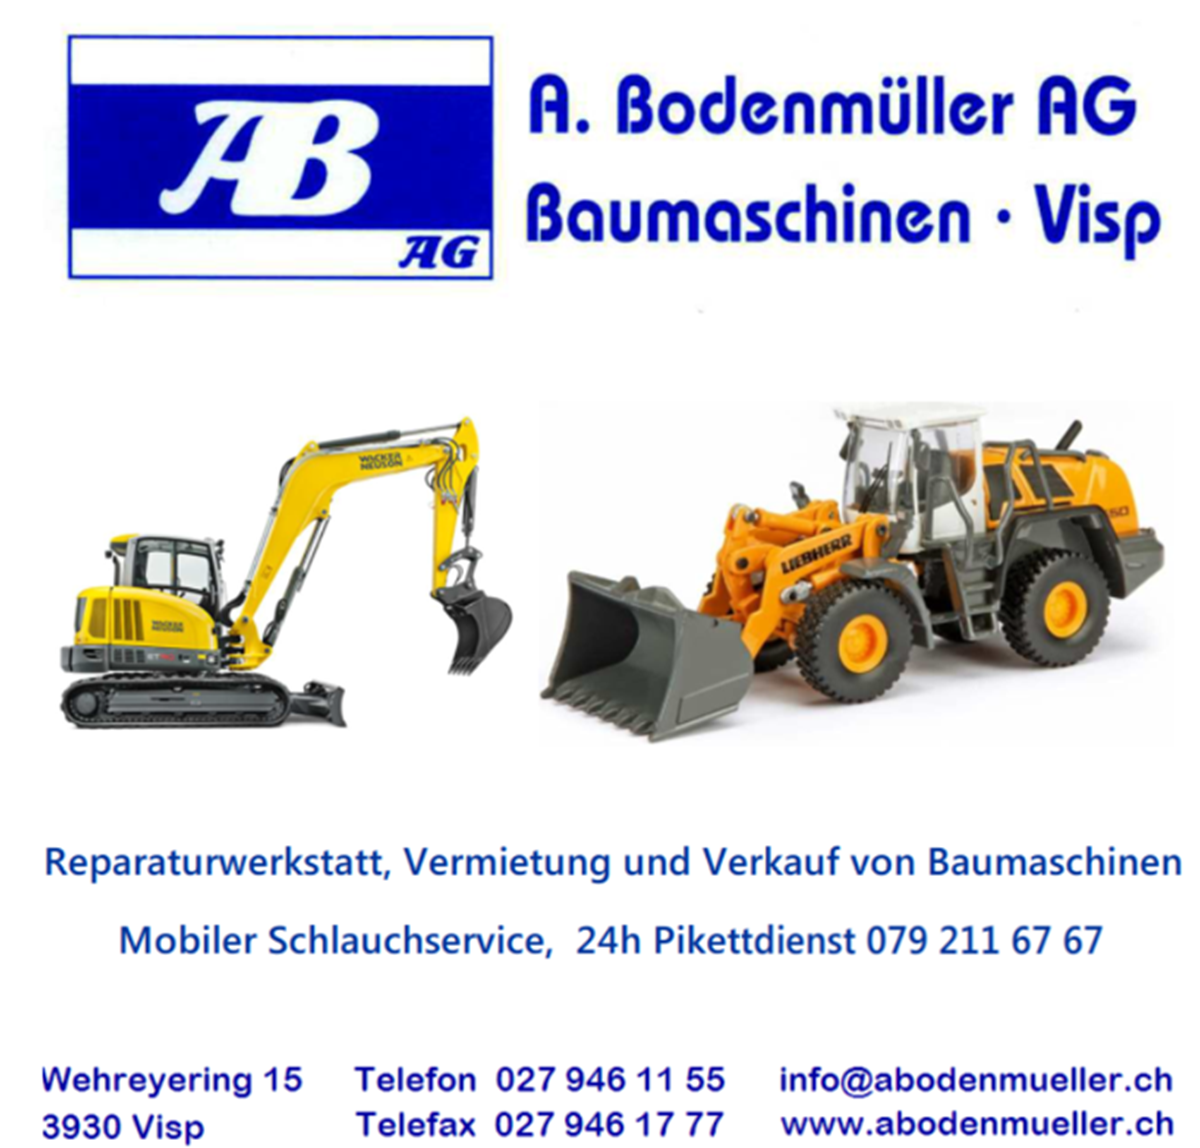 A. Bodenmüller AG